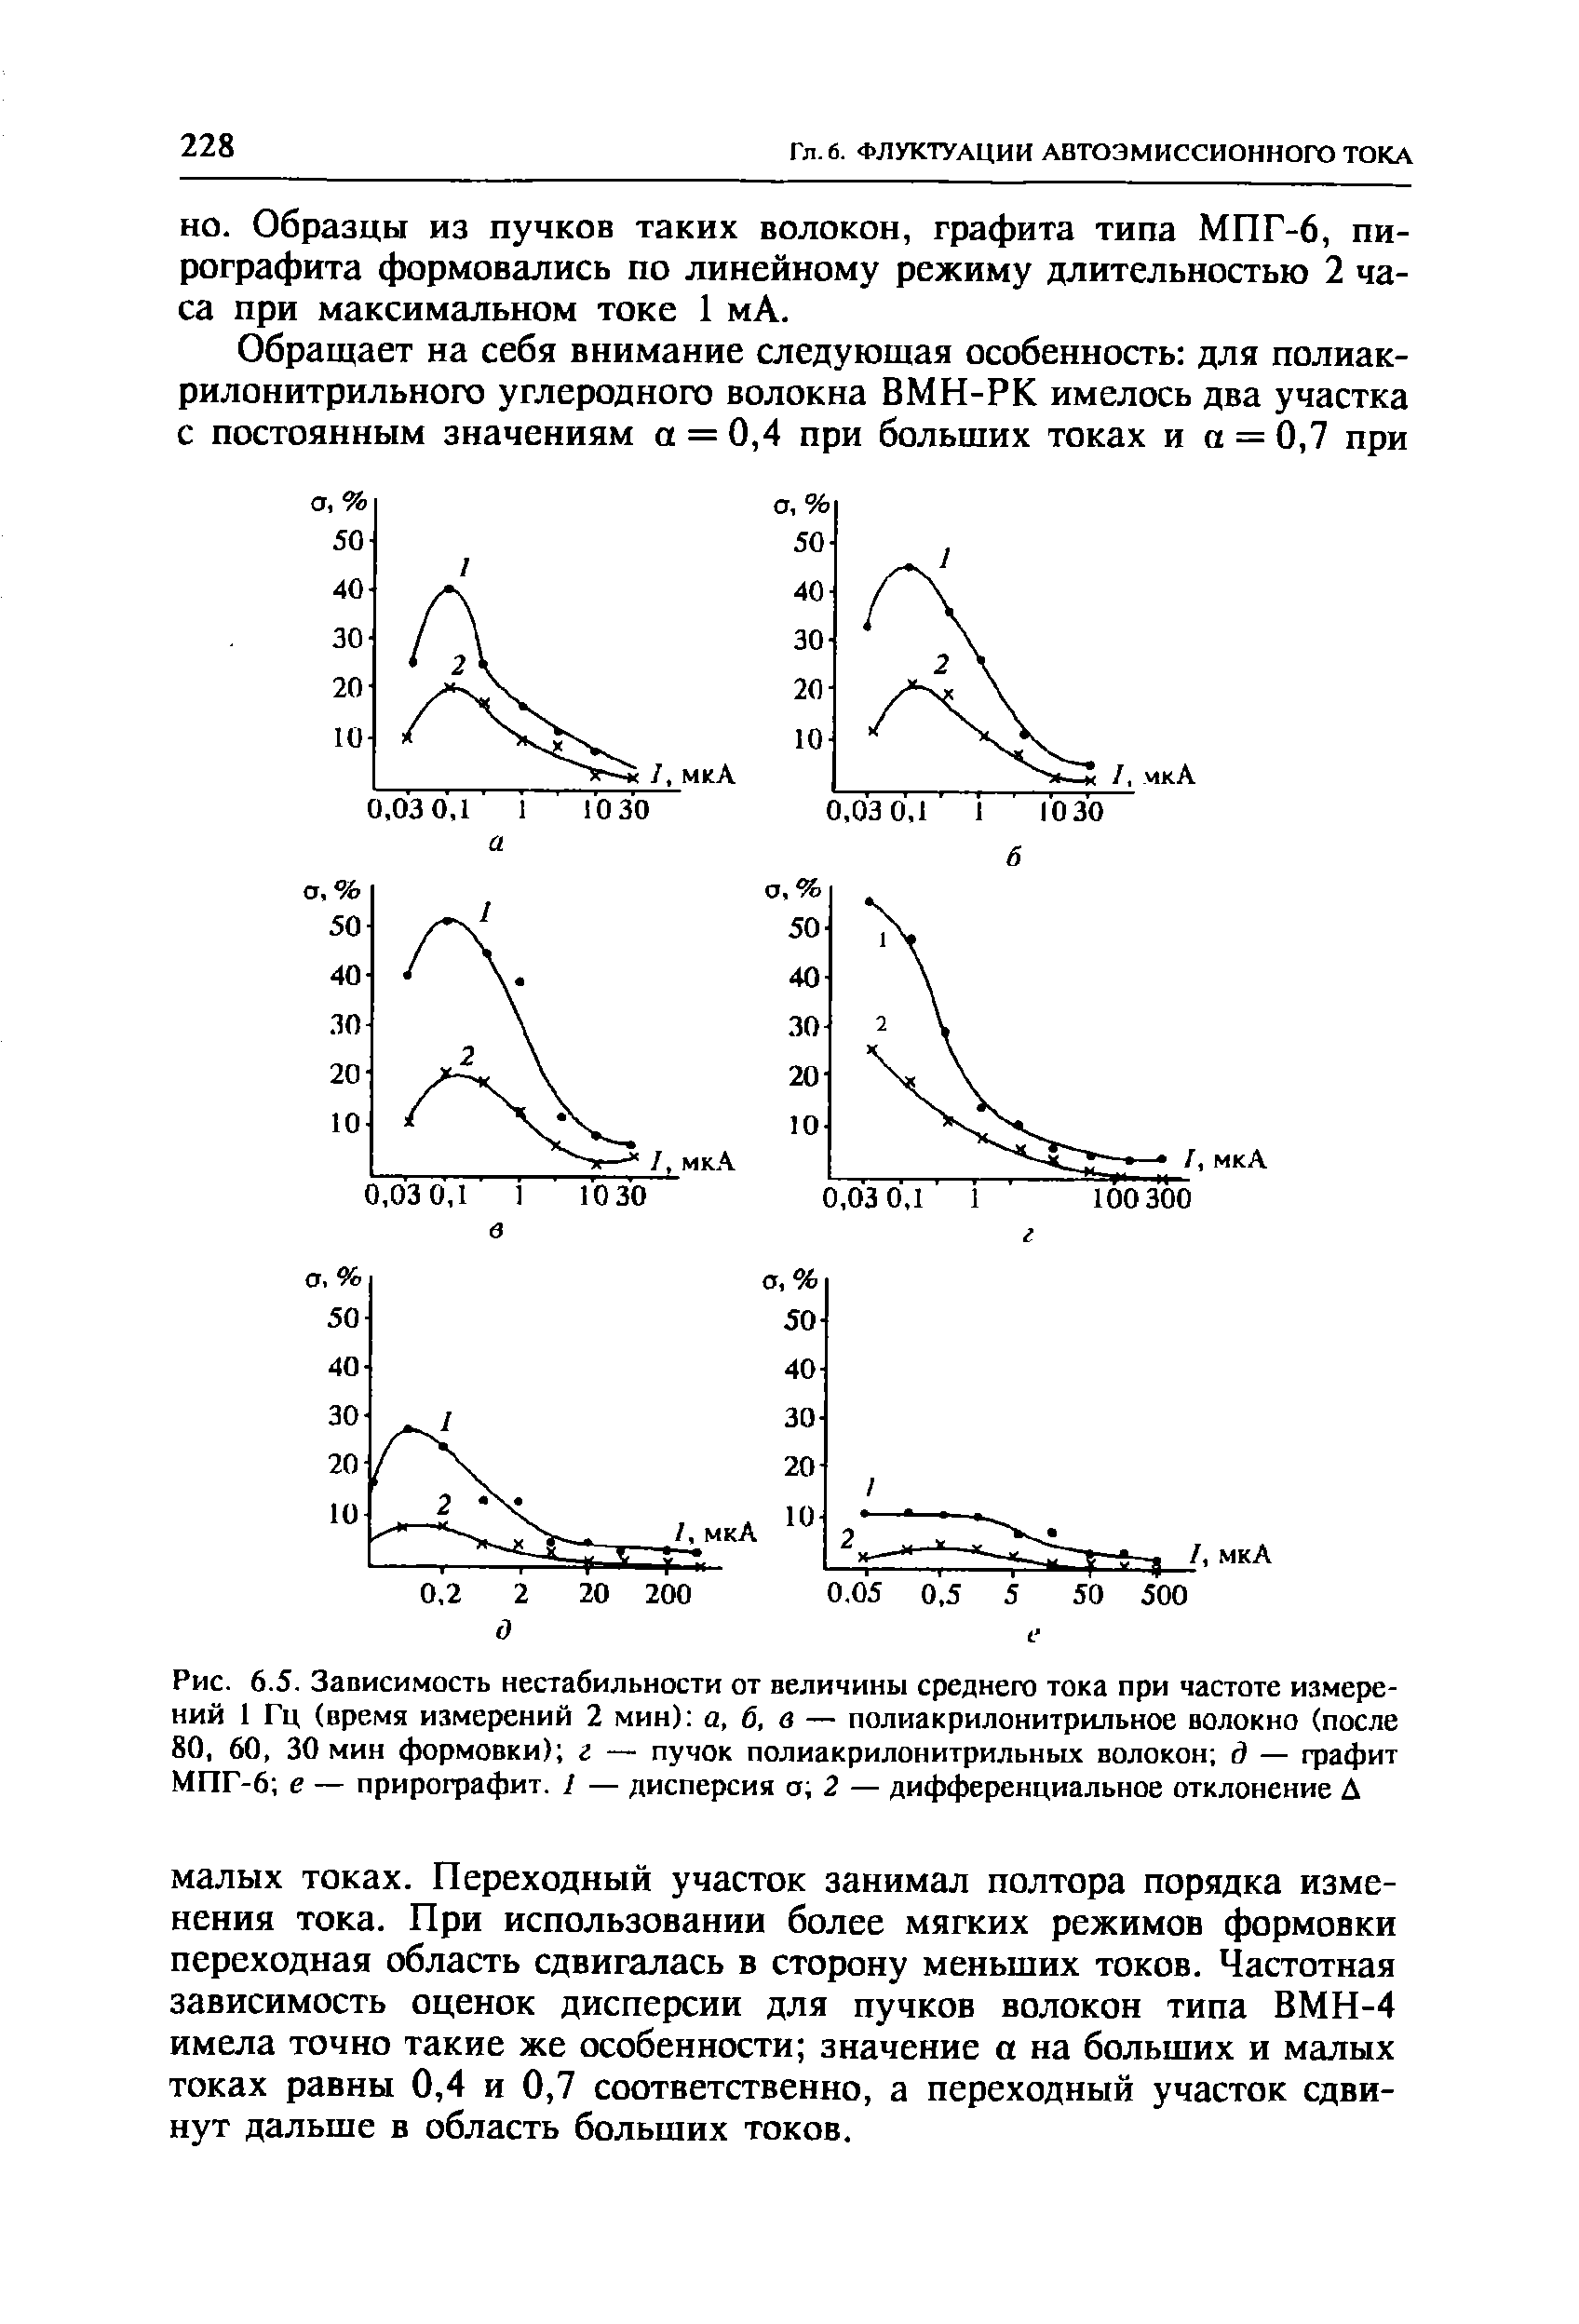 Рис. 6.5. Зависимость нестабильности от величины среднего тока при <a href="/info/295162">частоте измерений</a> 1 Гц (<a href="/info/67644">время измерений</a> 2 мин) а, 6, в — полиакрилонитрильное волокно (после 80, 60, 30 мин формовки) г — пучок полиакрилонитрильных волокон д — графит МПГ-6 е — прирографит. I — дисперсия а 2 — дифференциальное отклонение Д
